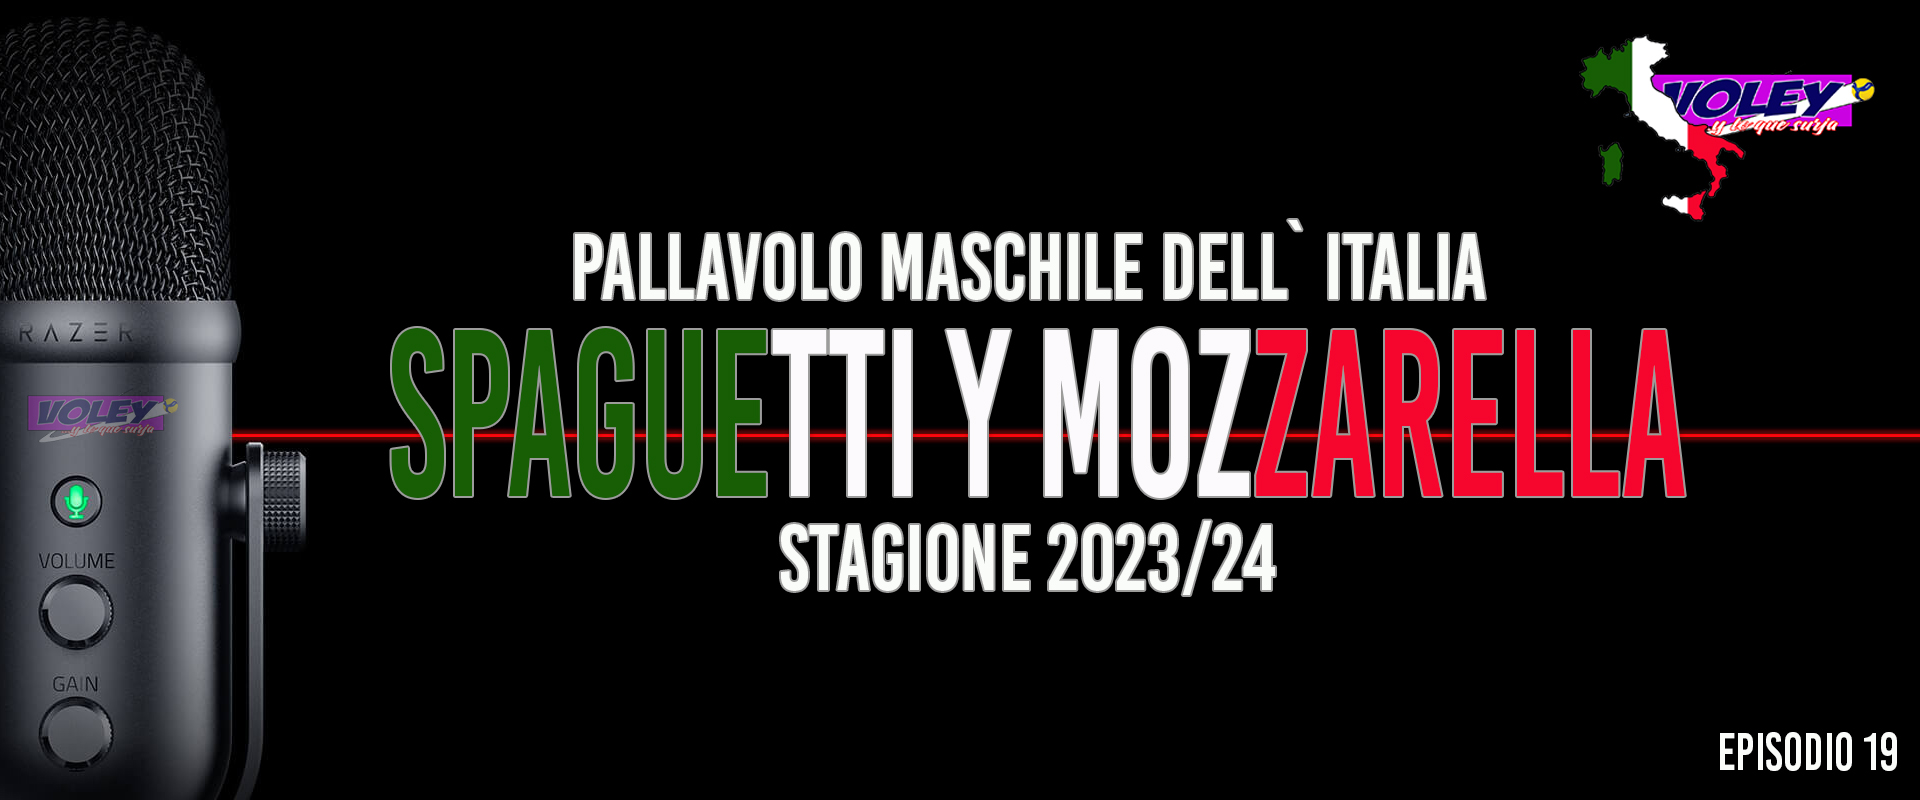 Quiero Spaguetti y Mozzarella. Episodio 19. Despelote y locura de jornada